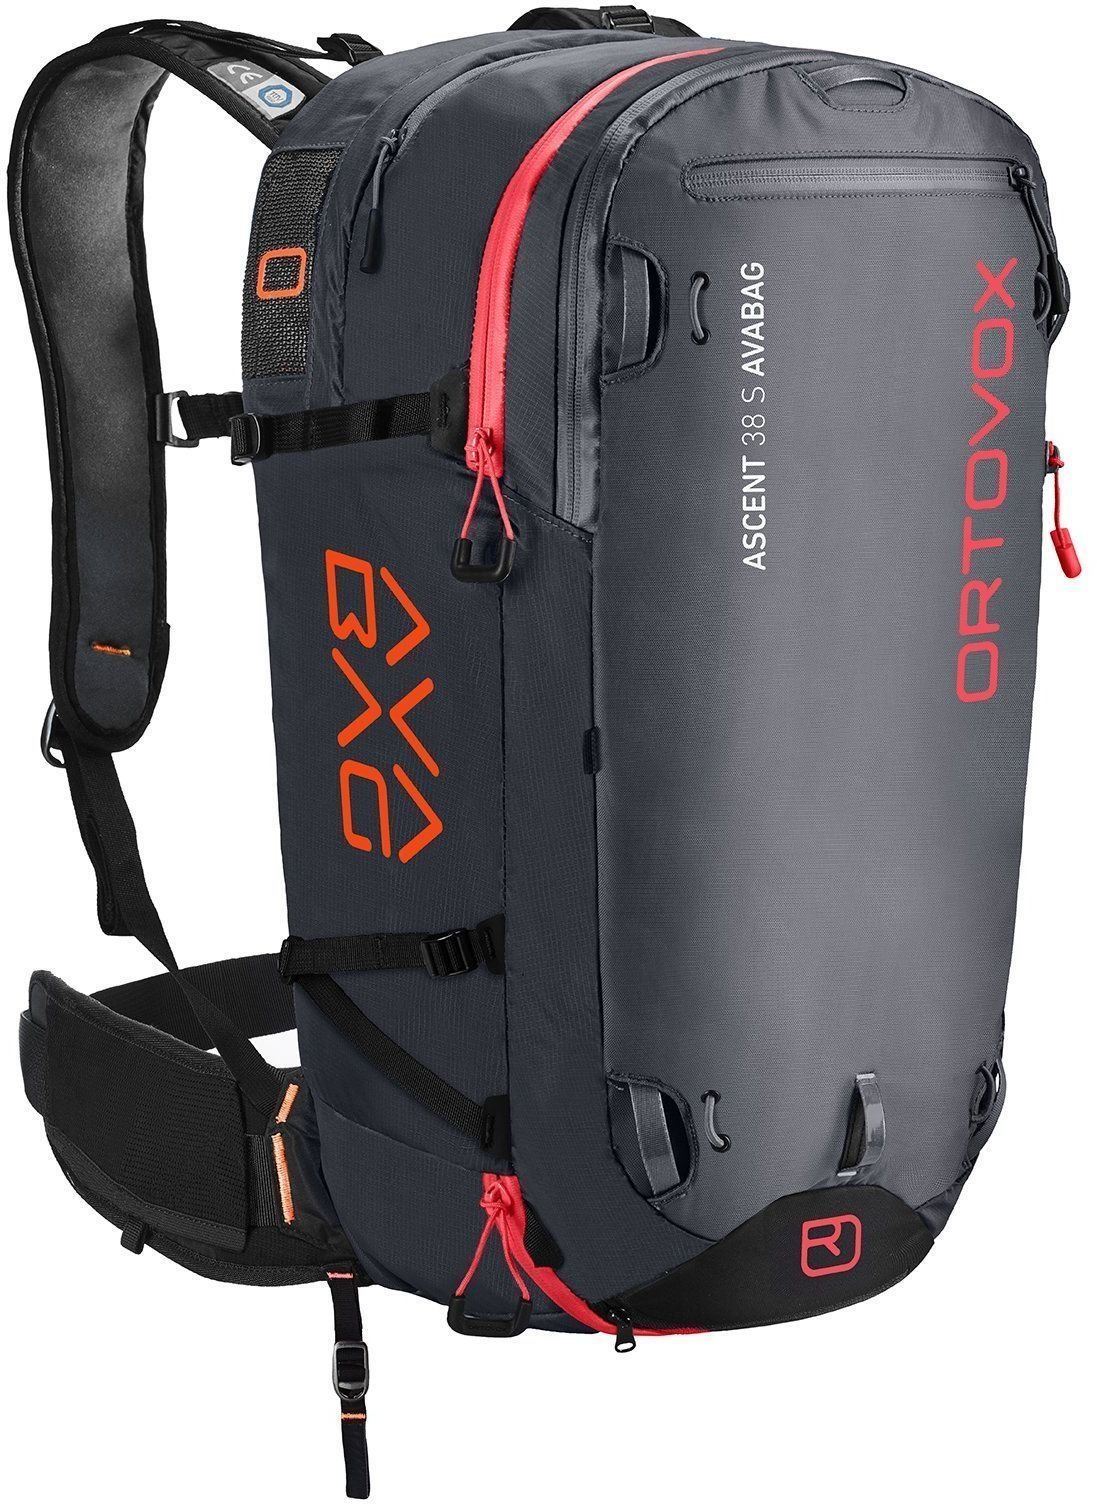 Sac de voyage ski Ortovox Ascent 38 S Avabag Kit Black Anthracite Sac de voyage ski